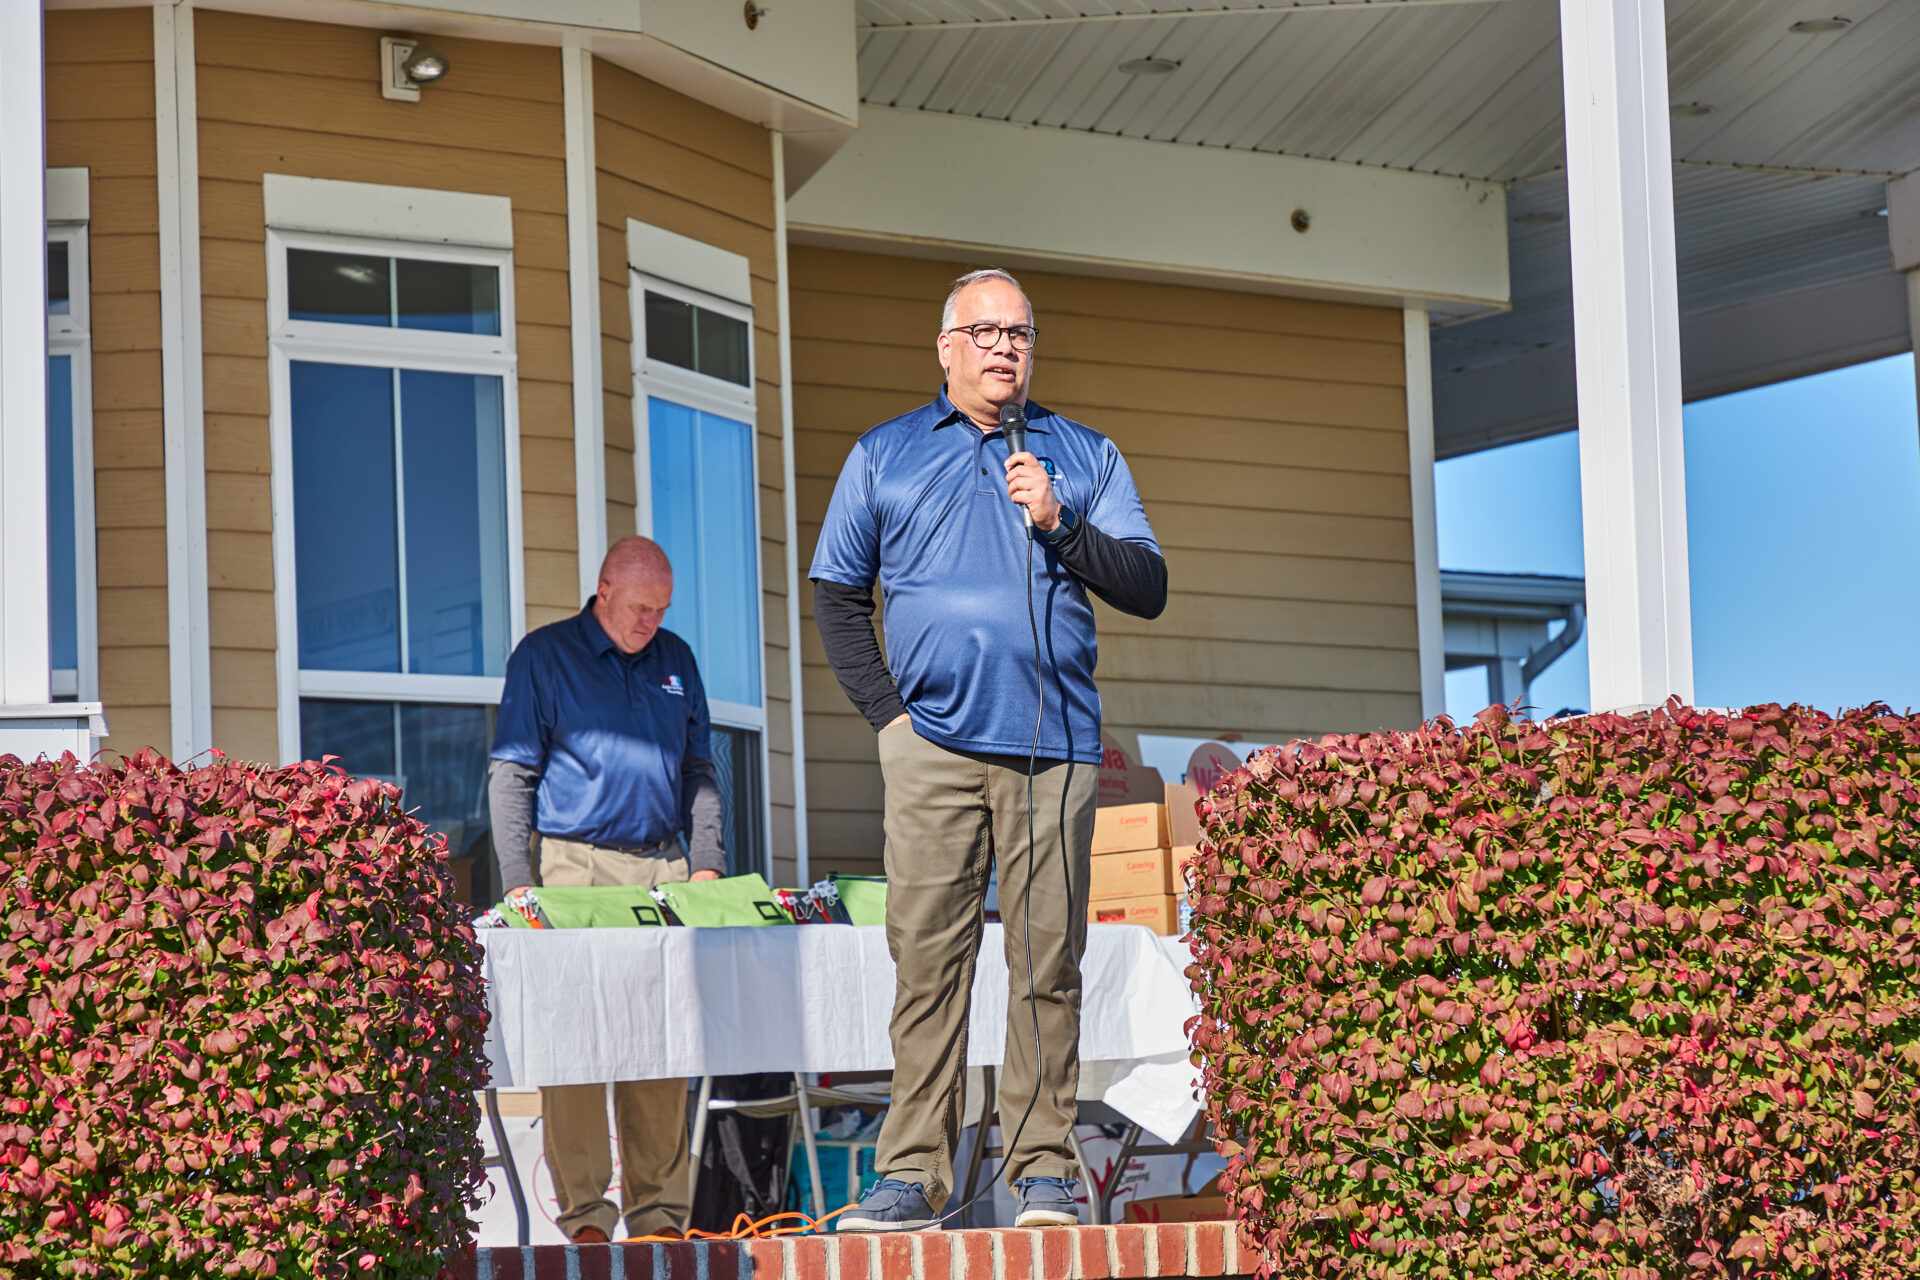 A man giving a speech at an event